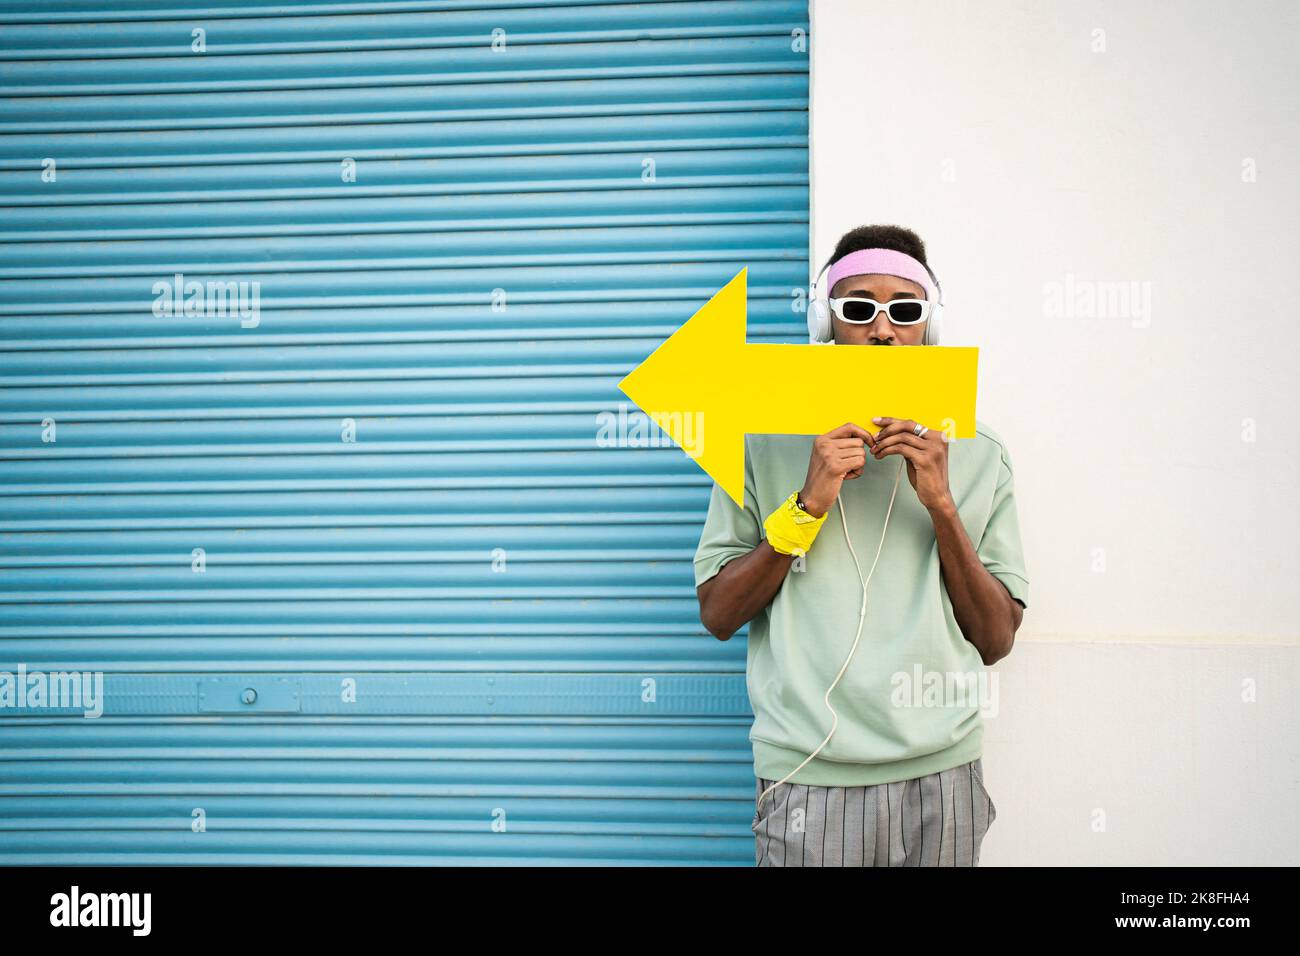 Homme tenant le signe de la flèche jaune devant les lèvres par un obturateur bleu Banque D'Images